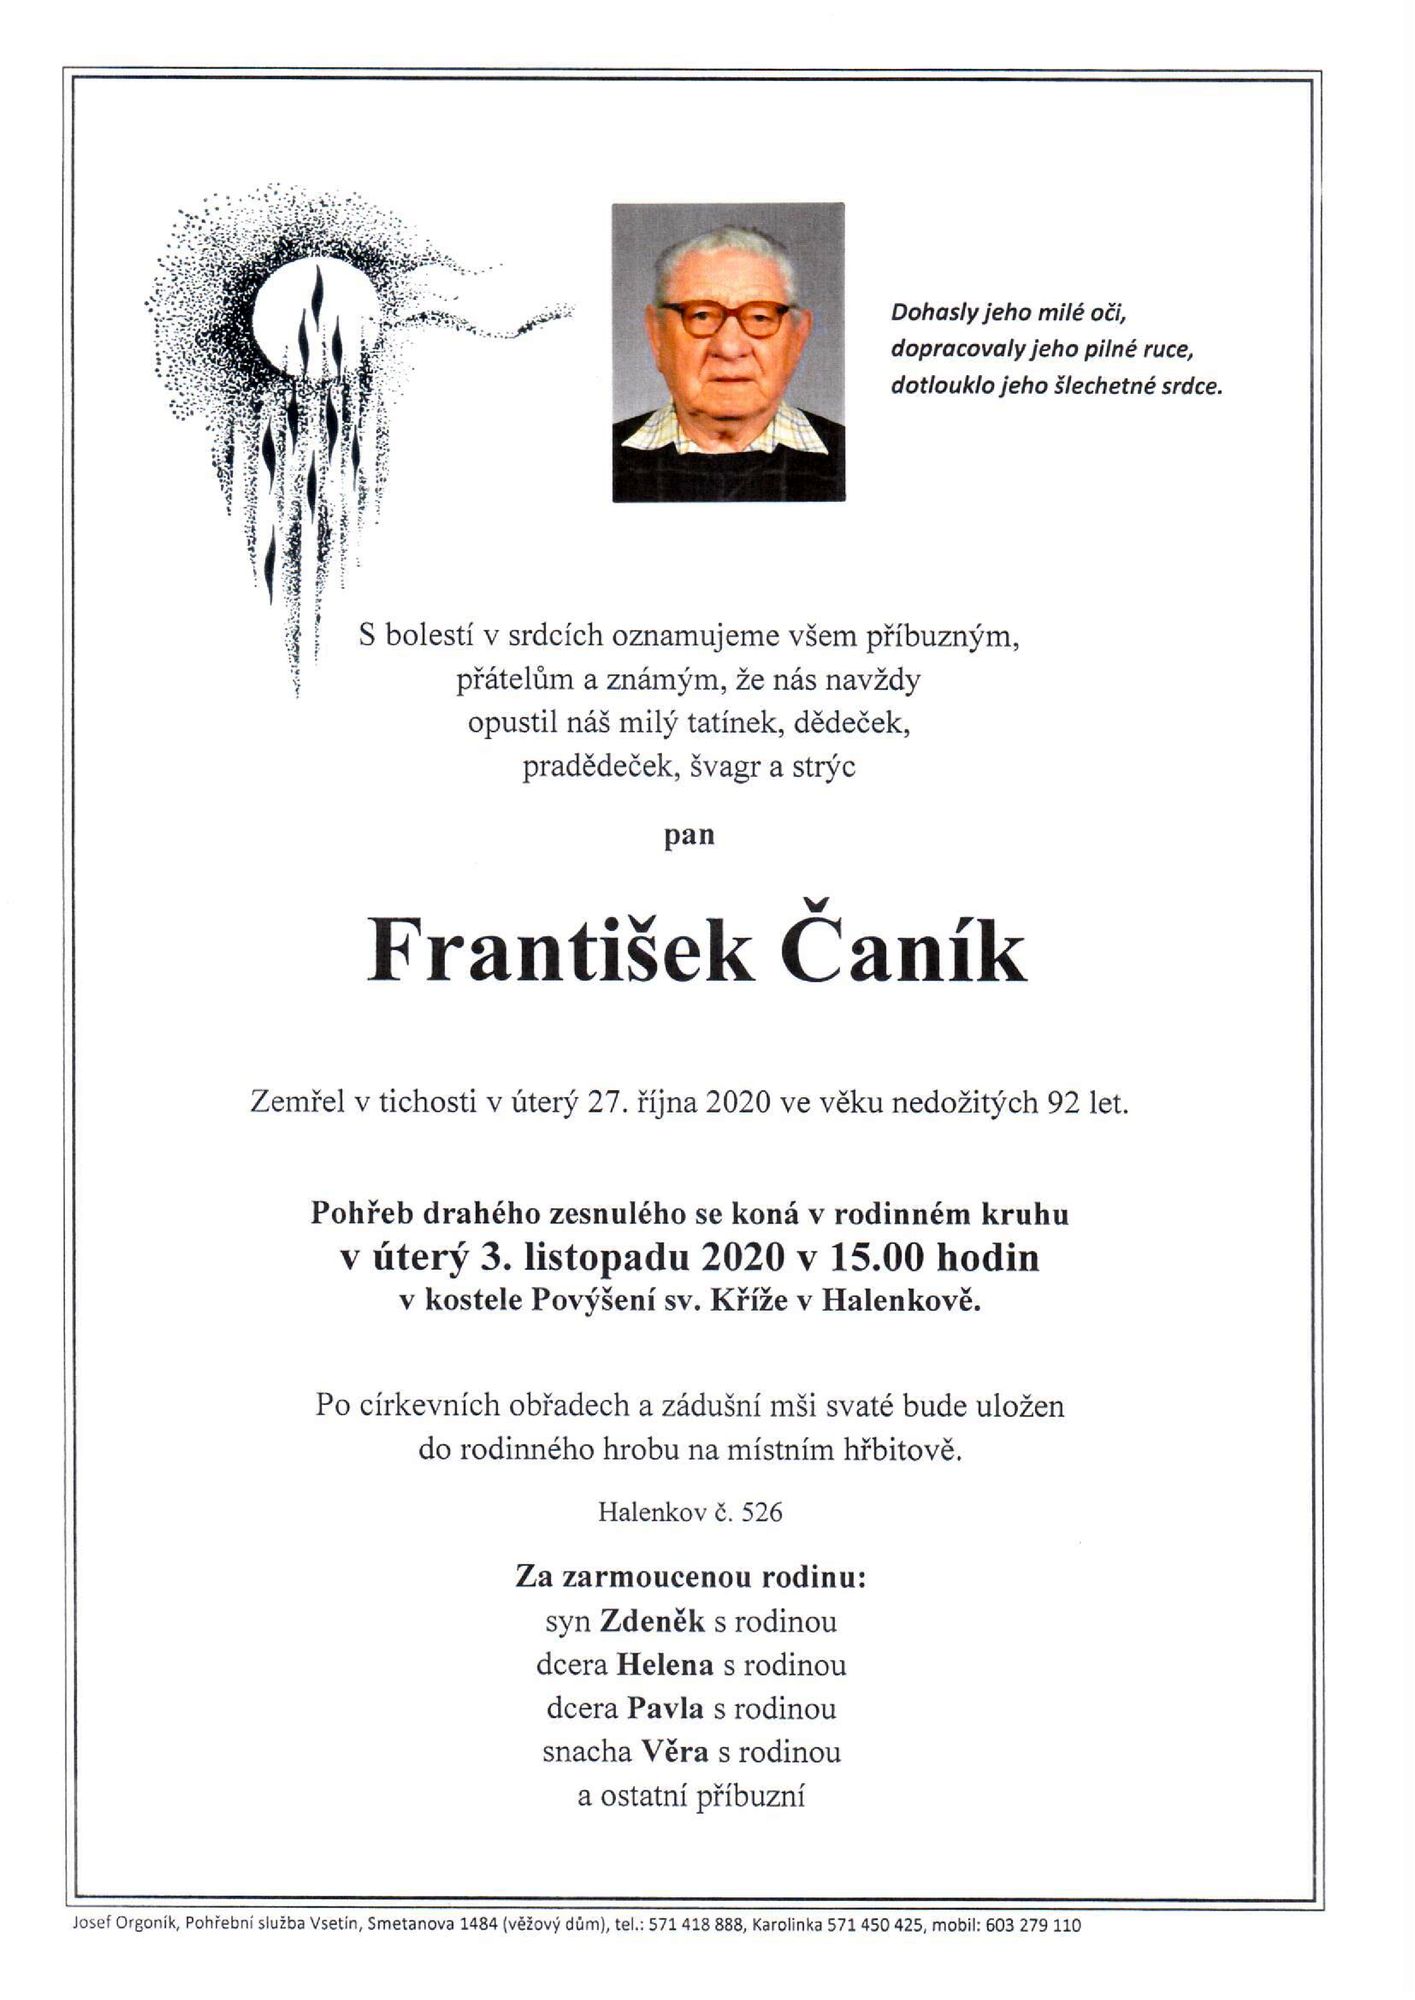 František Čaník